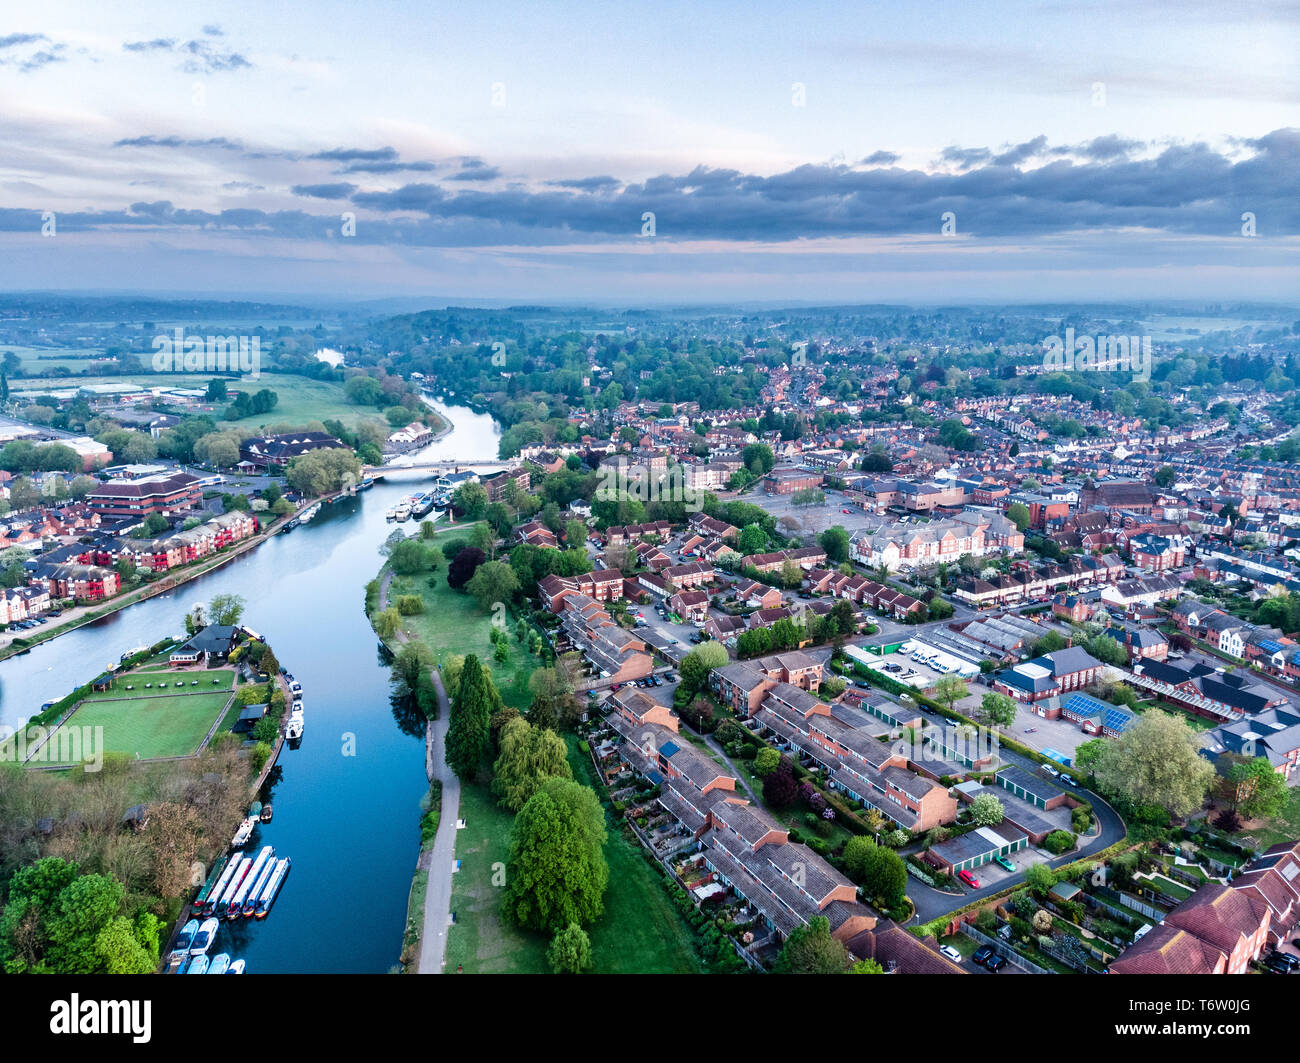 Luftbild von Reading, Berkshire, UK, bei Sonnenaufgang, einschließlich der Themse. Übersicht Caversham und Caversham Bridge. Blick nach Westen. Stockfoto